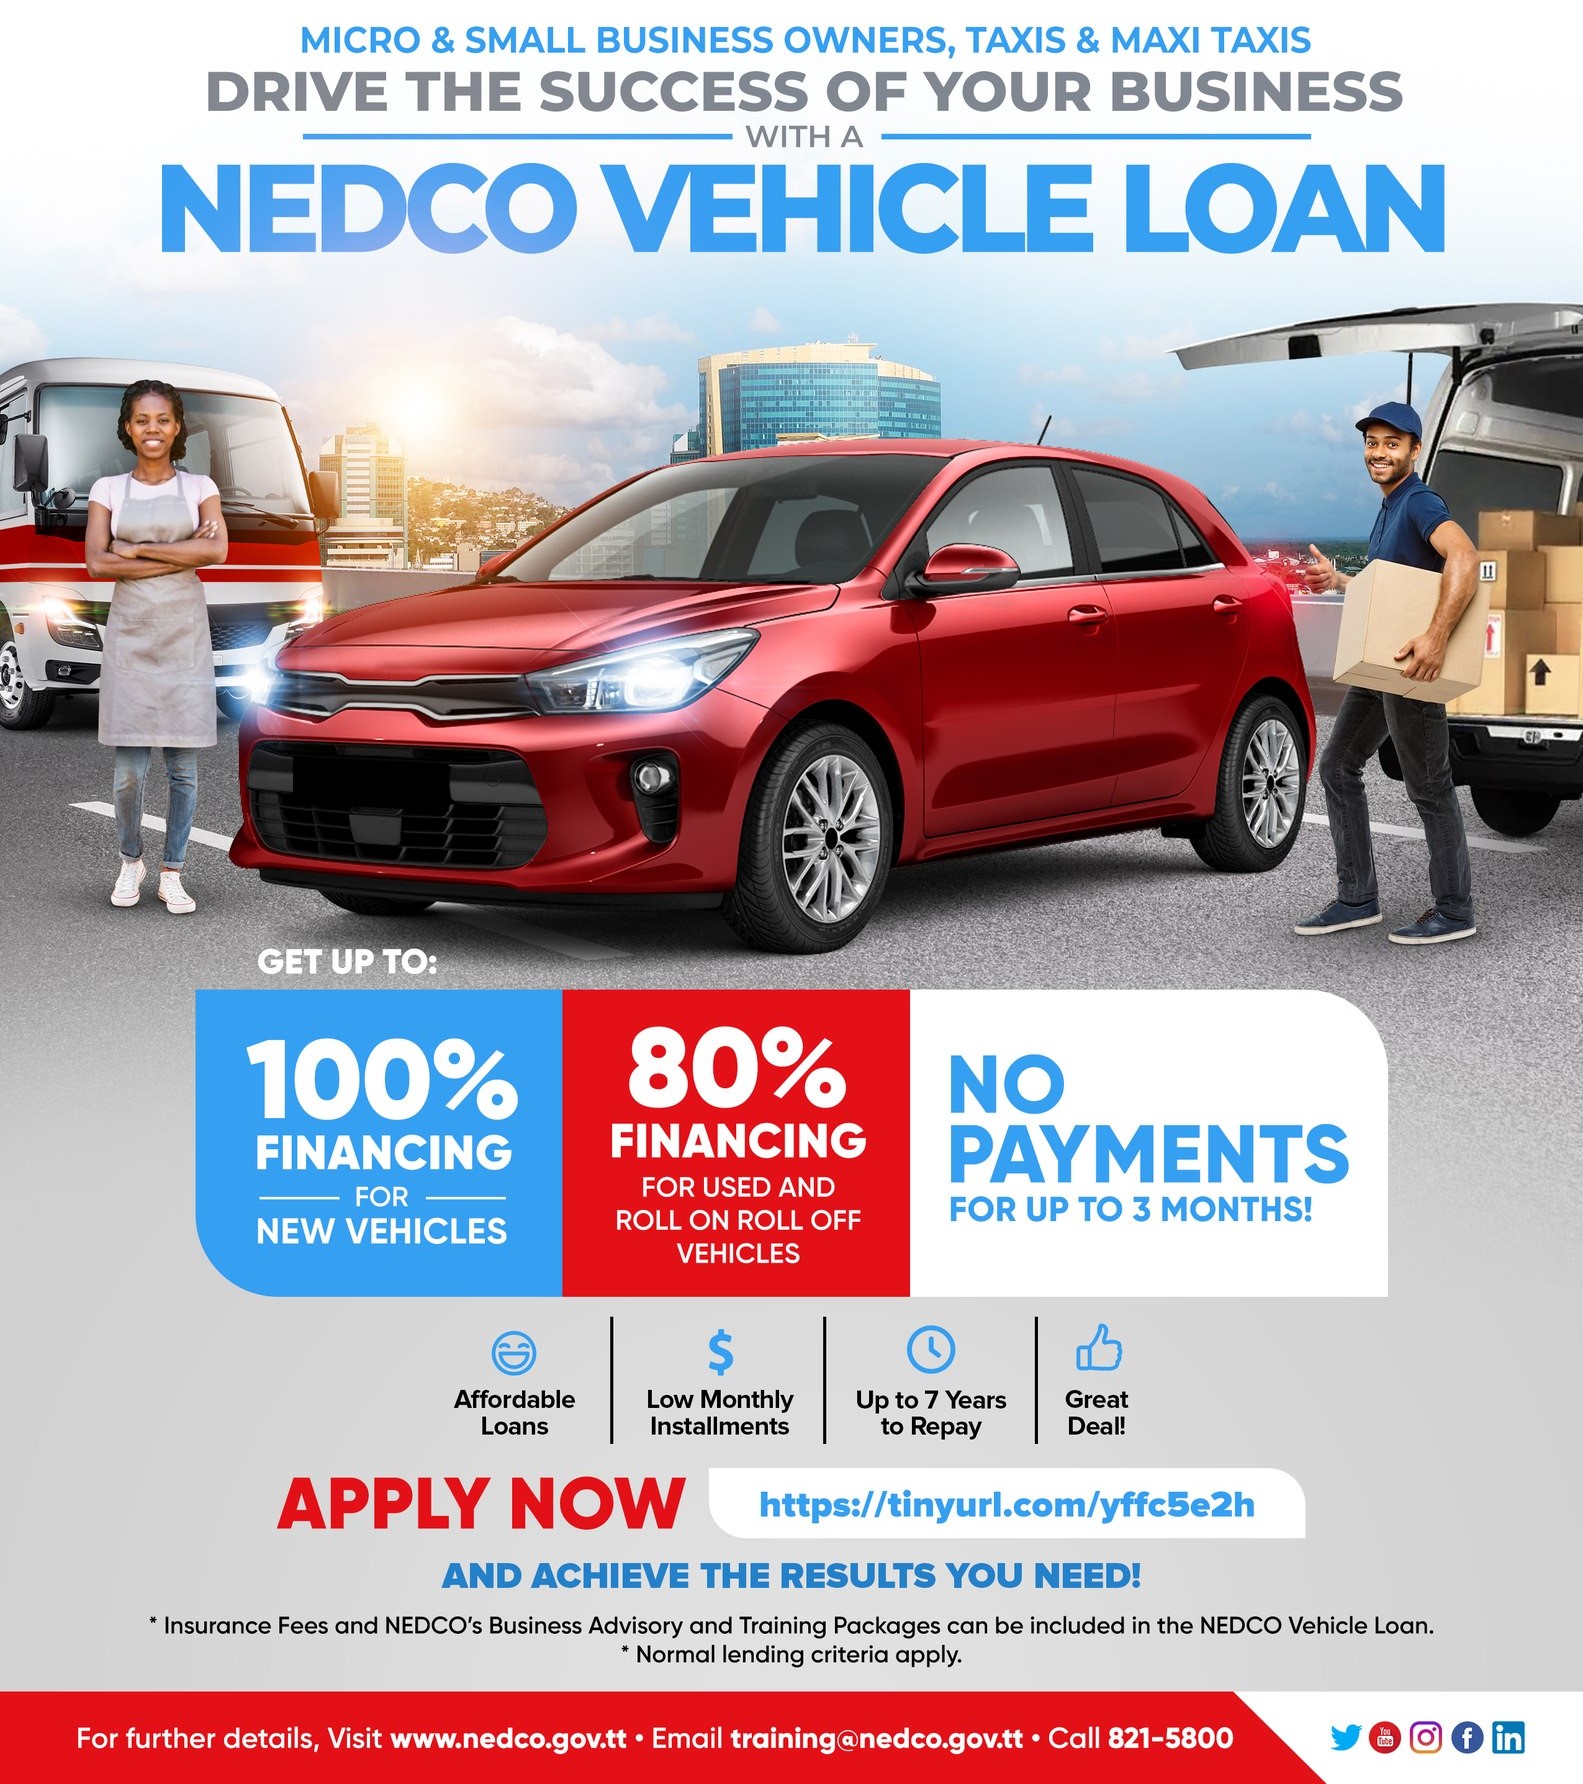 NEDCO Vehicle Loan